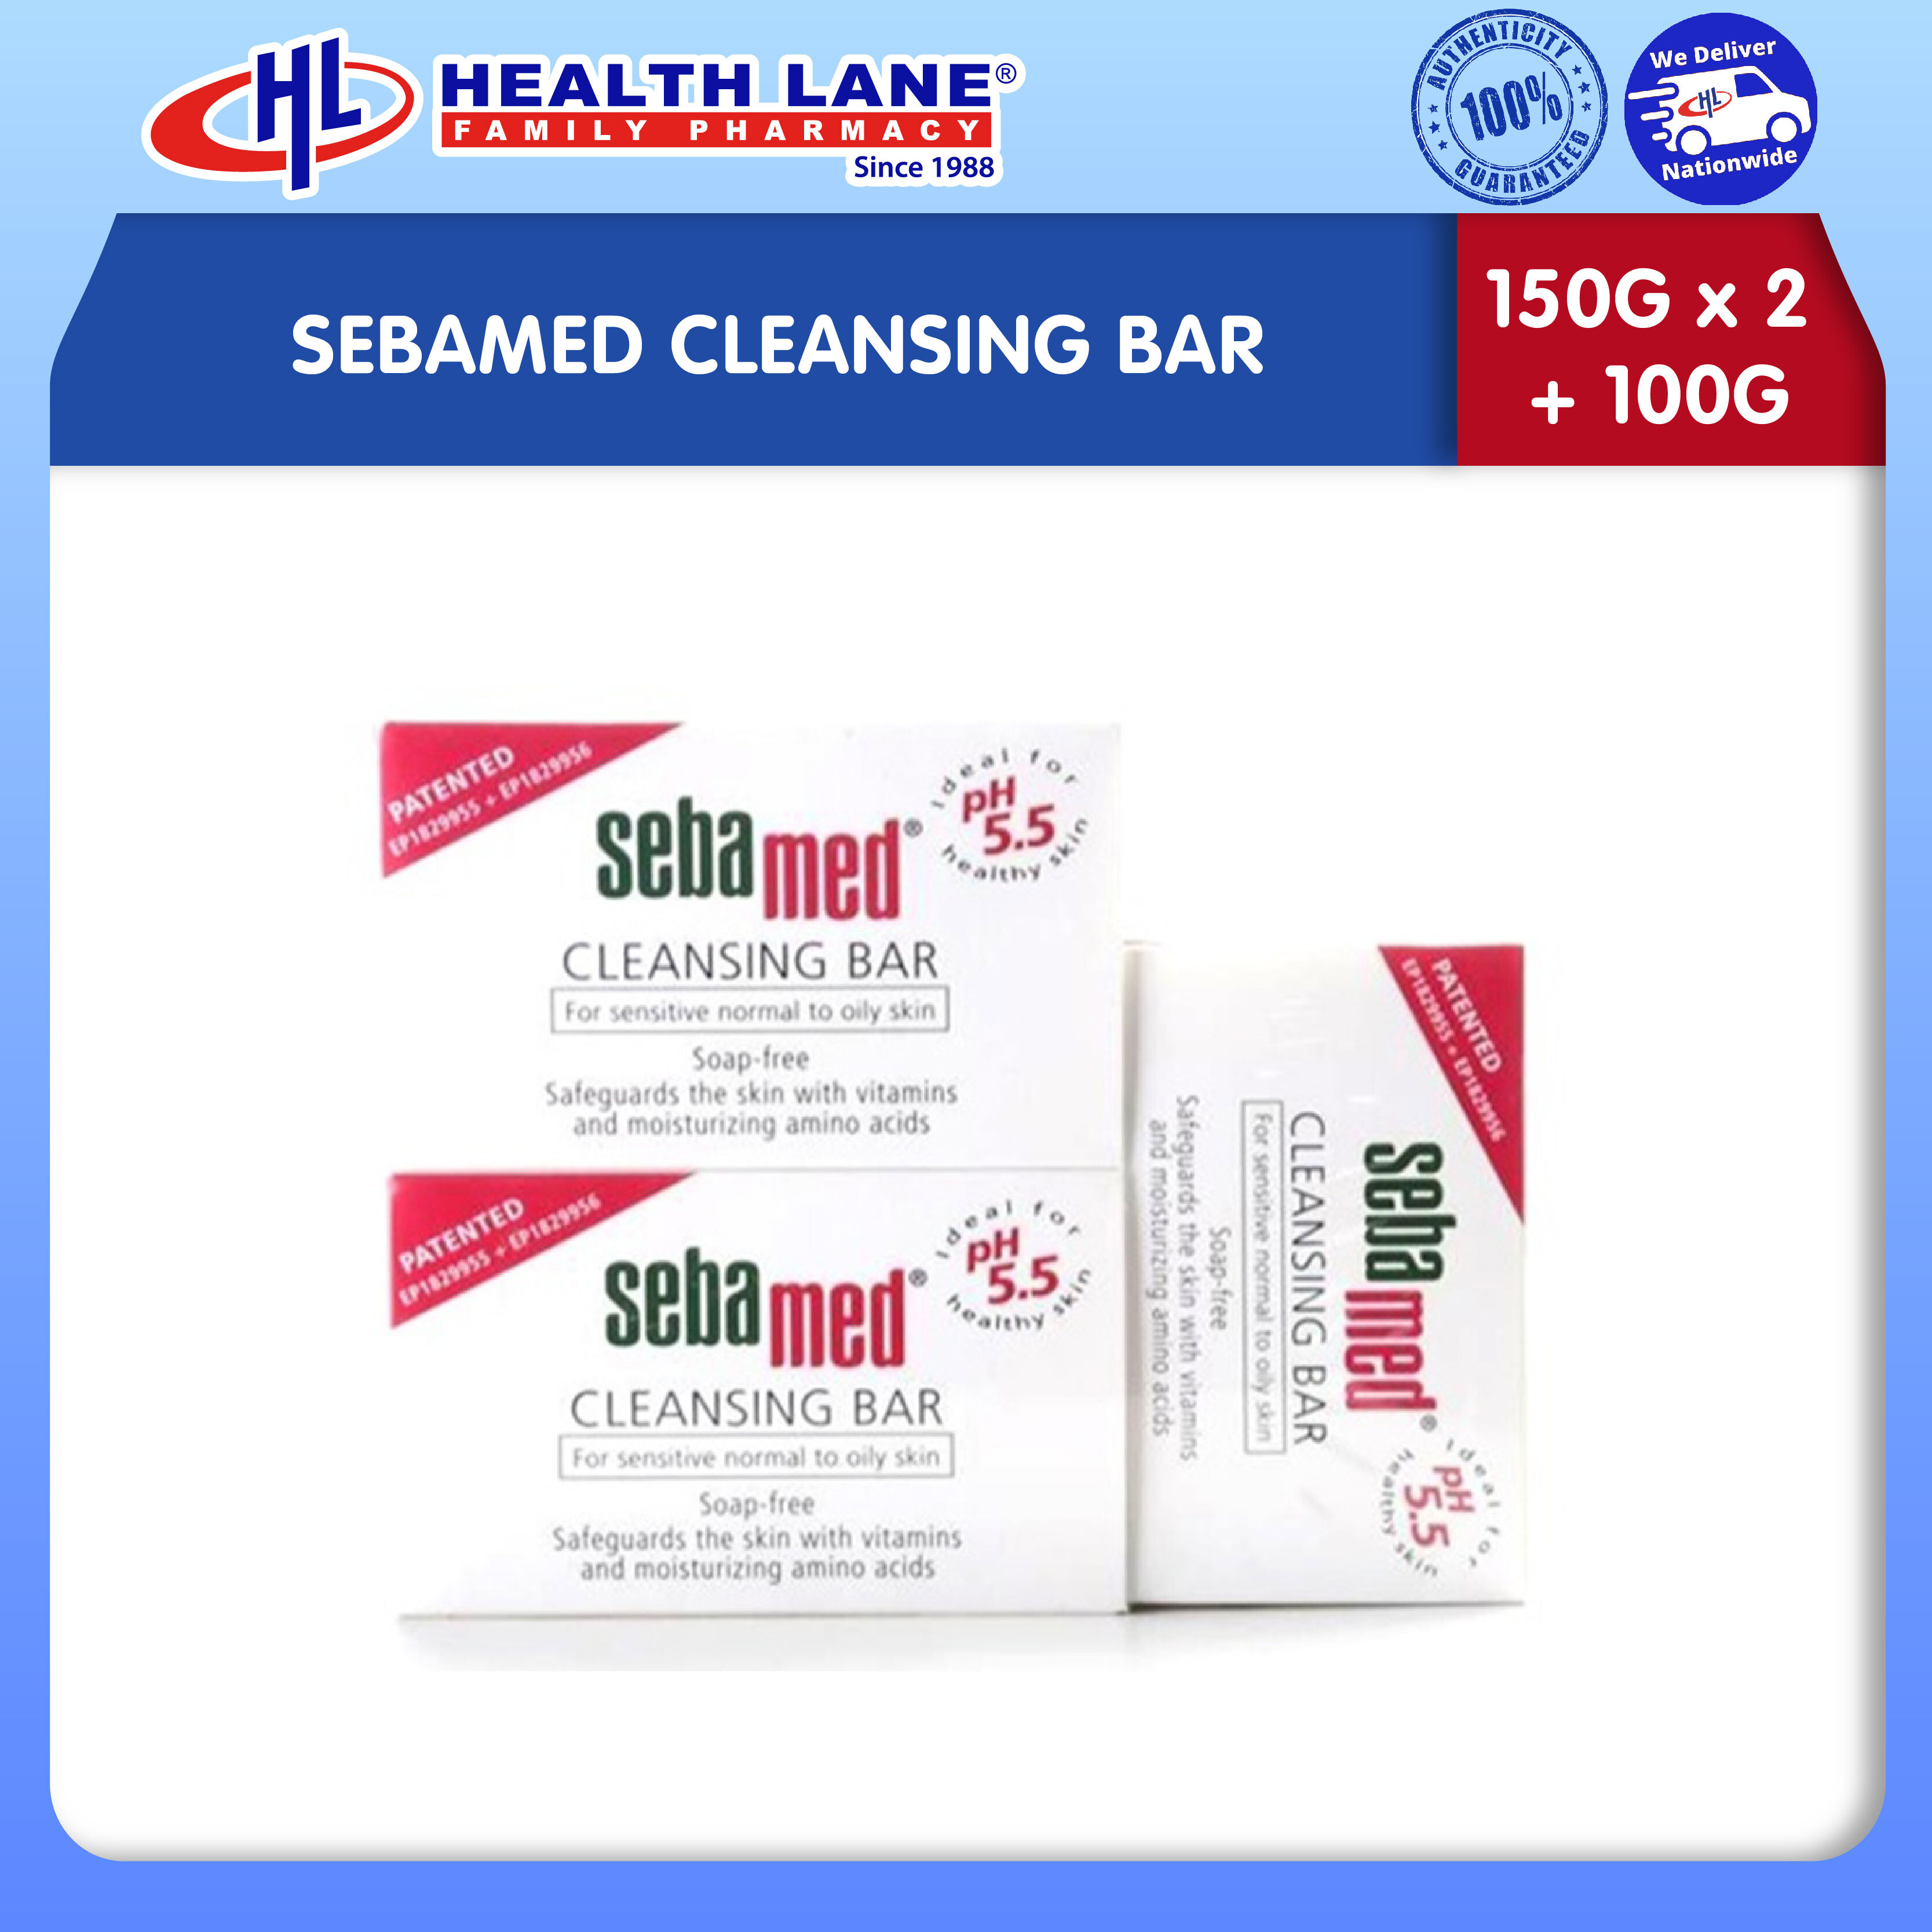 SEBAMED CLEANSING BAR (150Gx2+100G)